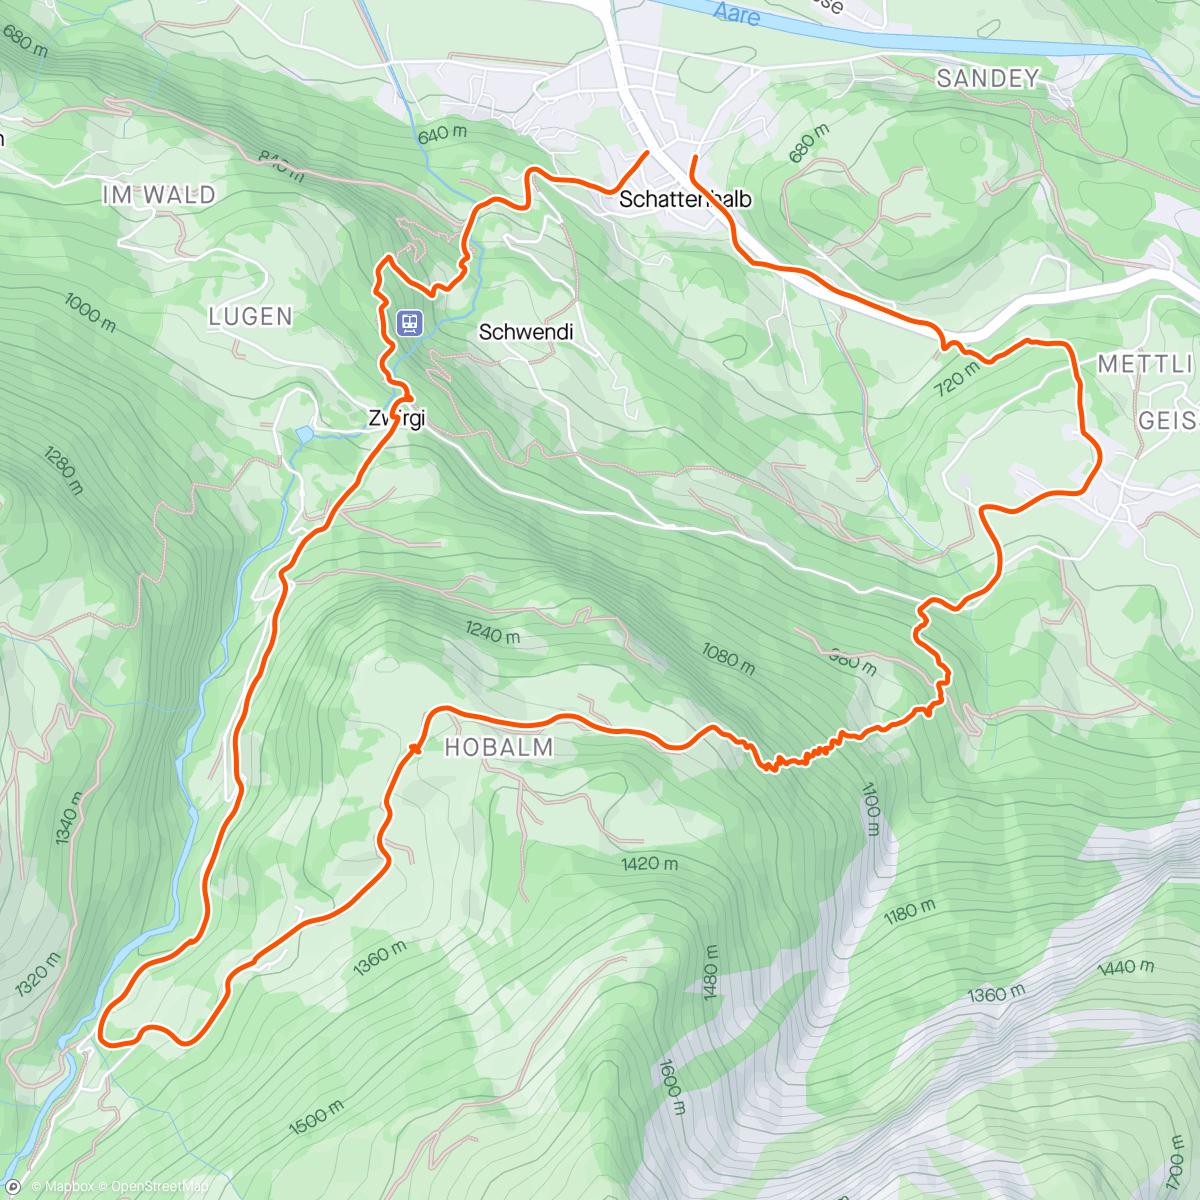 アクティビティ「Hobalm - Kaltenbrunnen - Zwirgi」の地図